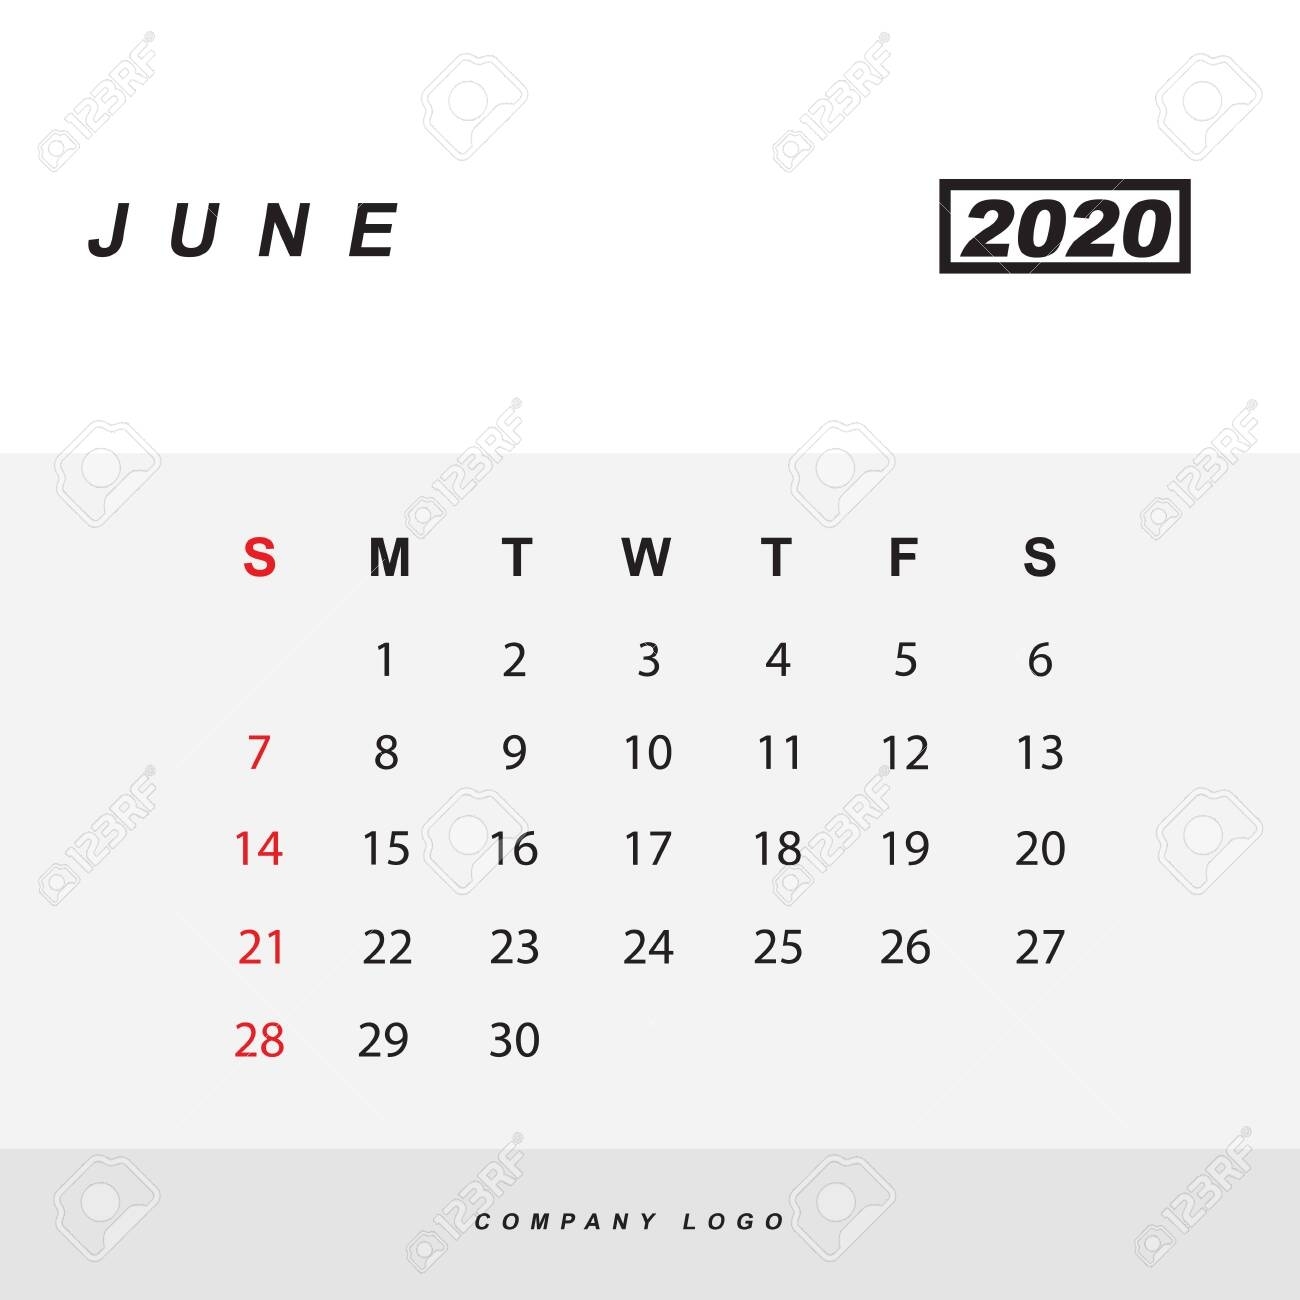 Simple Design Of June 2020 Calendar Template